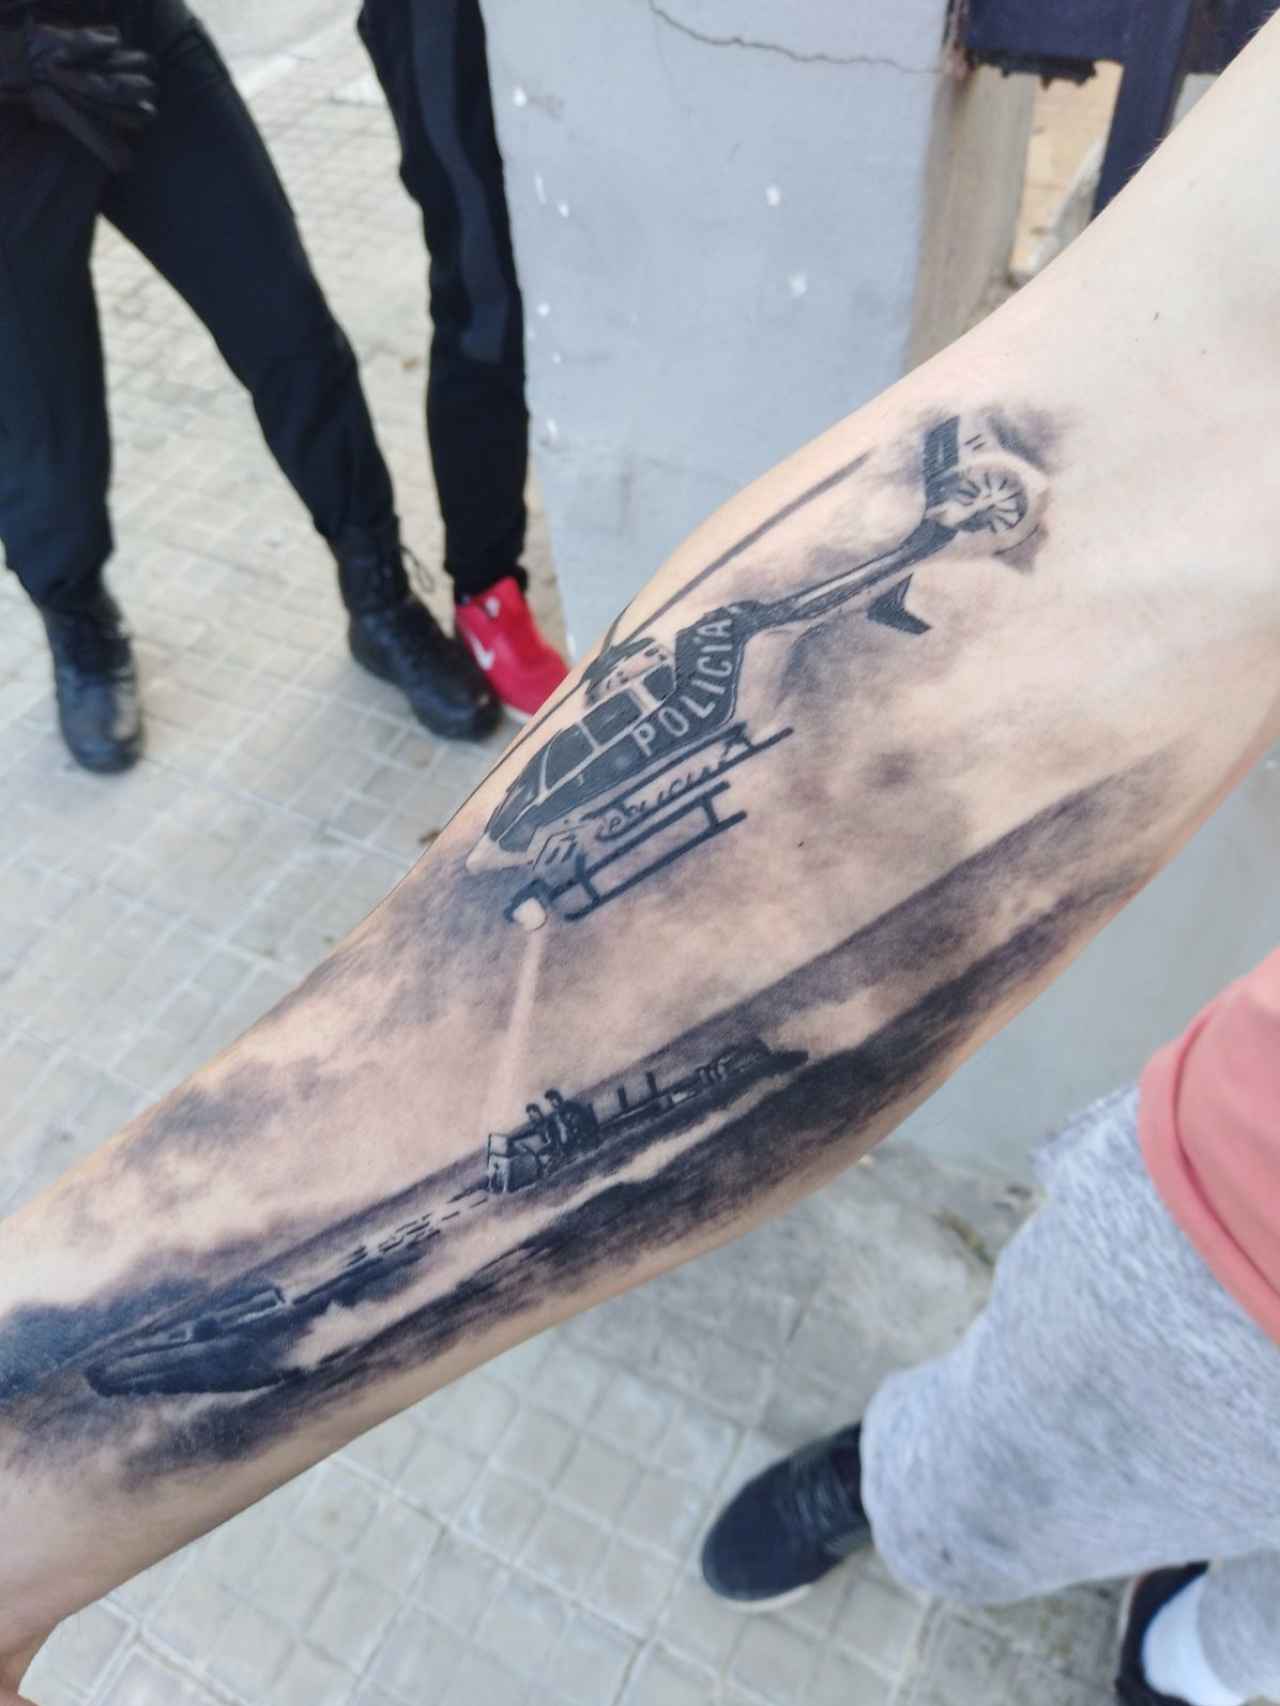 Tatuaje en el antebrazo derecho de un traficante de La Línea de la Concepción. Representa una persecución a una lancha llena de fardos.